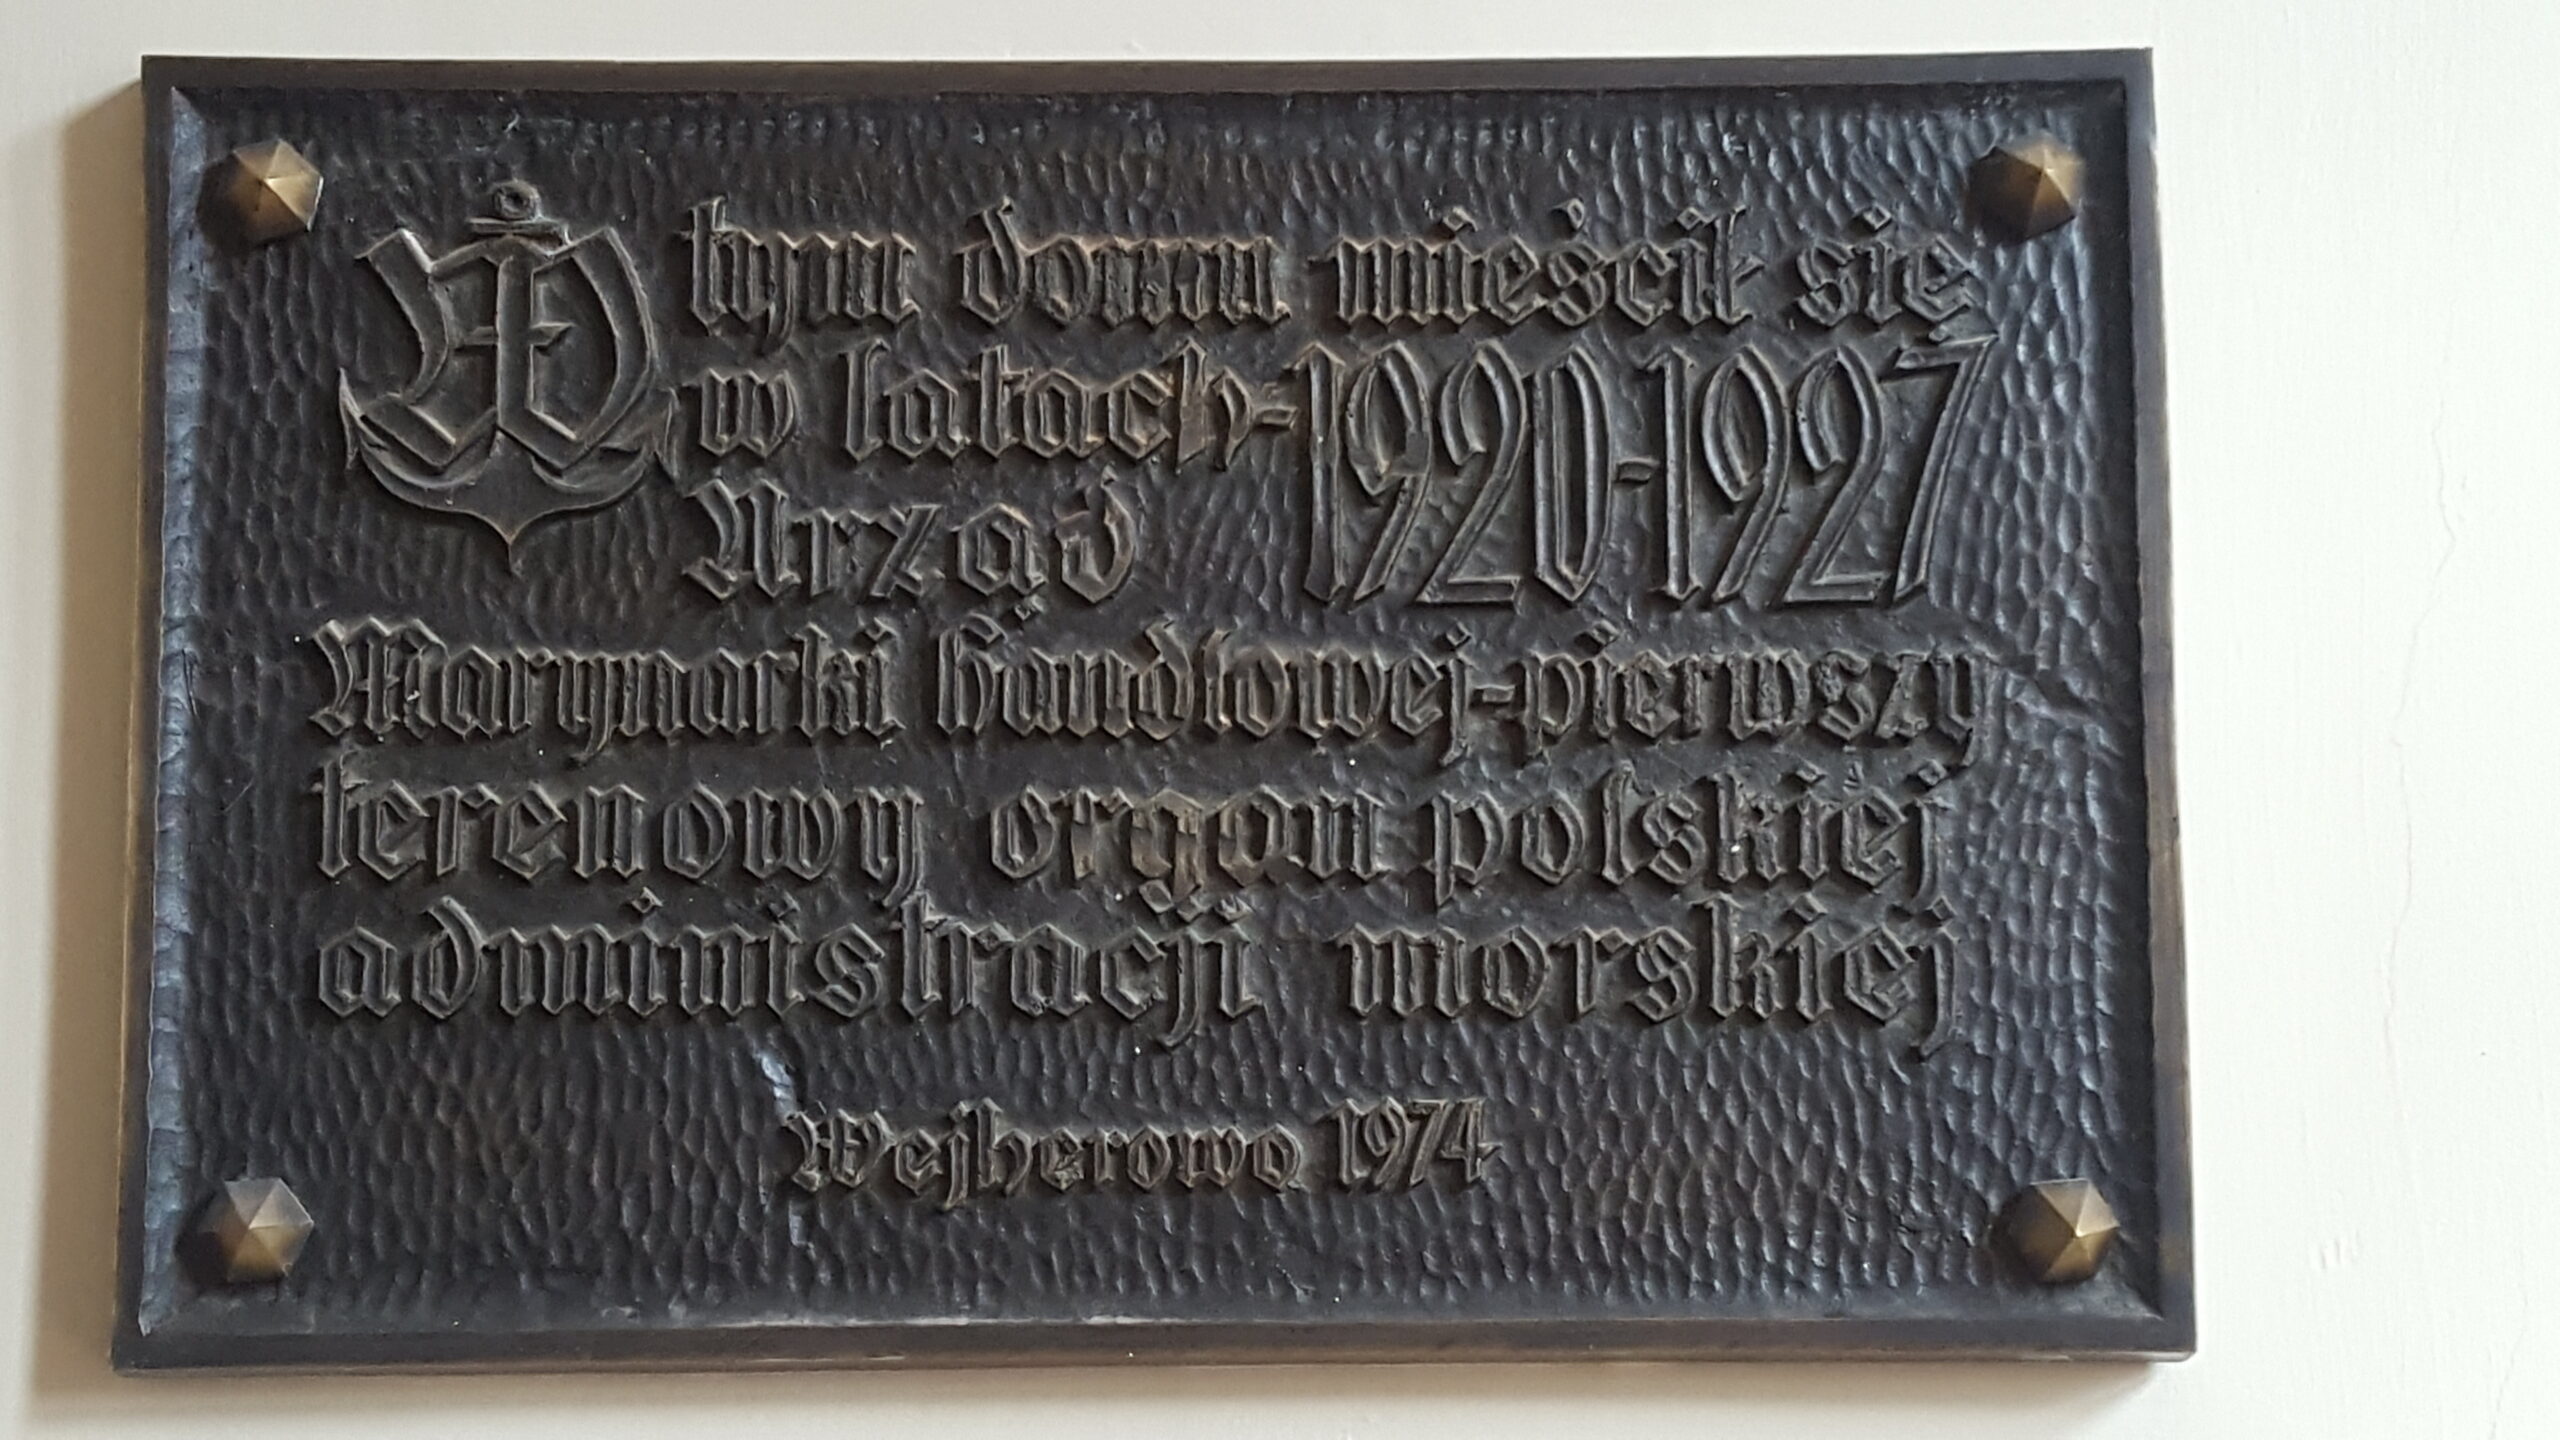 Tablica pamiątkowa znajdująca się wewnątrz budynku przy ul. Dworcowej 7 w Wejherowie (fot. Barbara Gusman)